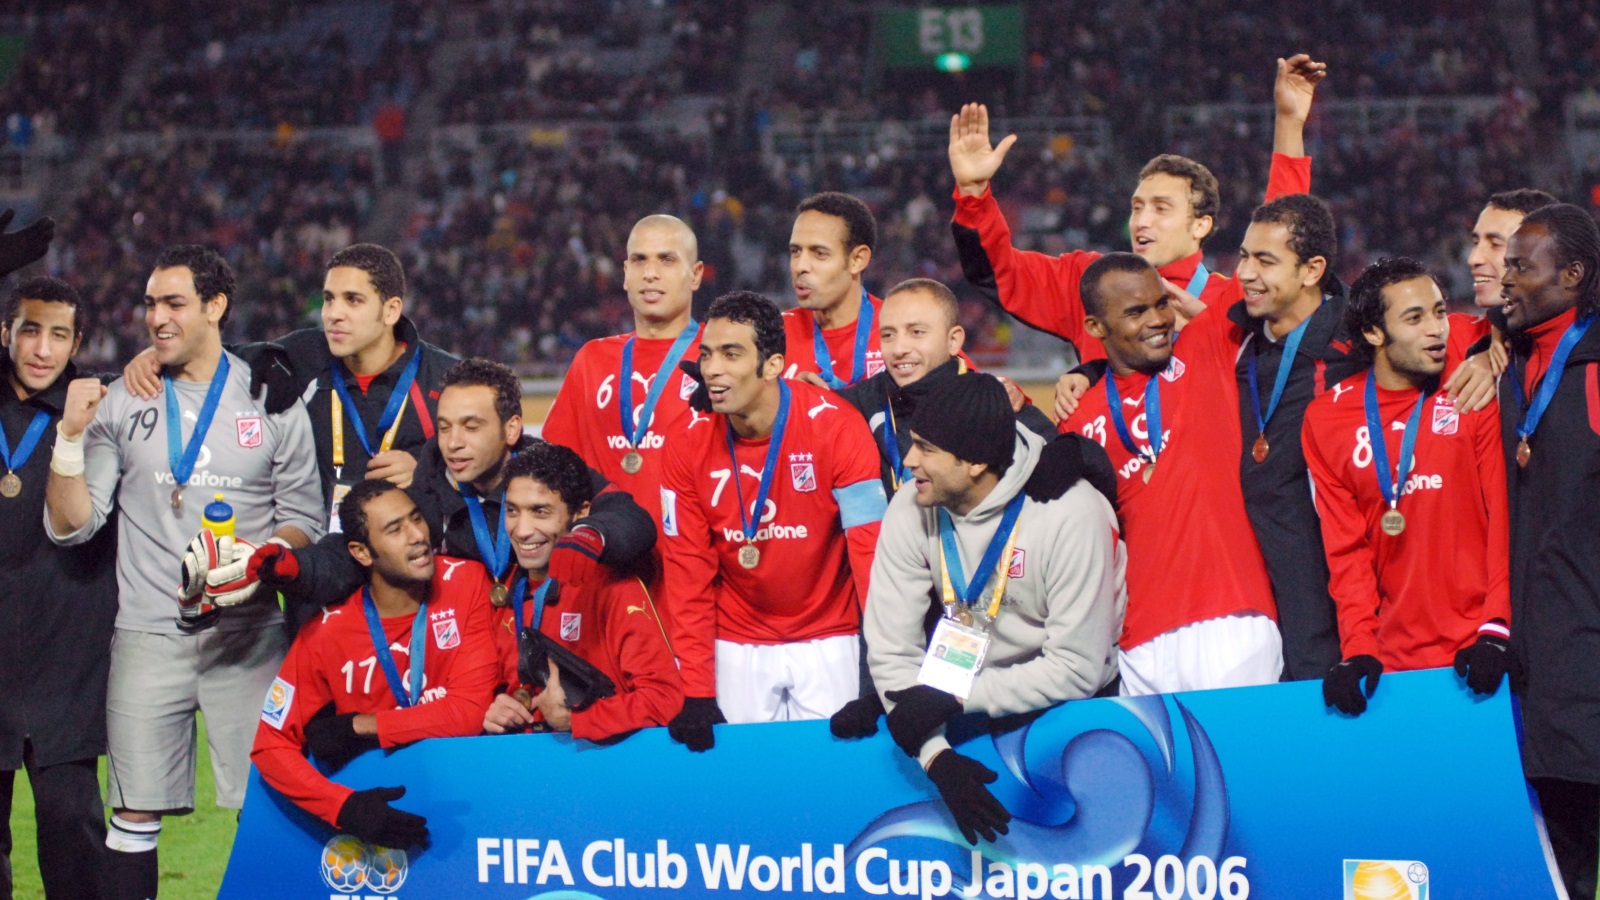 الأهلي المصري فاز بالبرونزية في 2006 (الأوروبية)